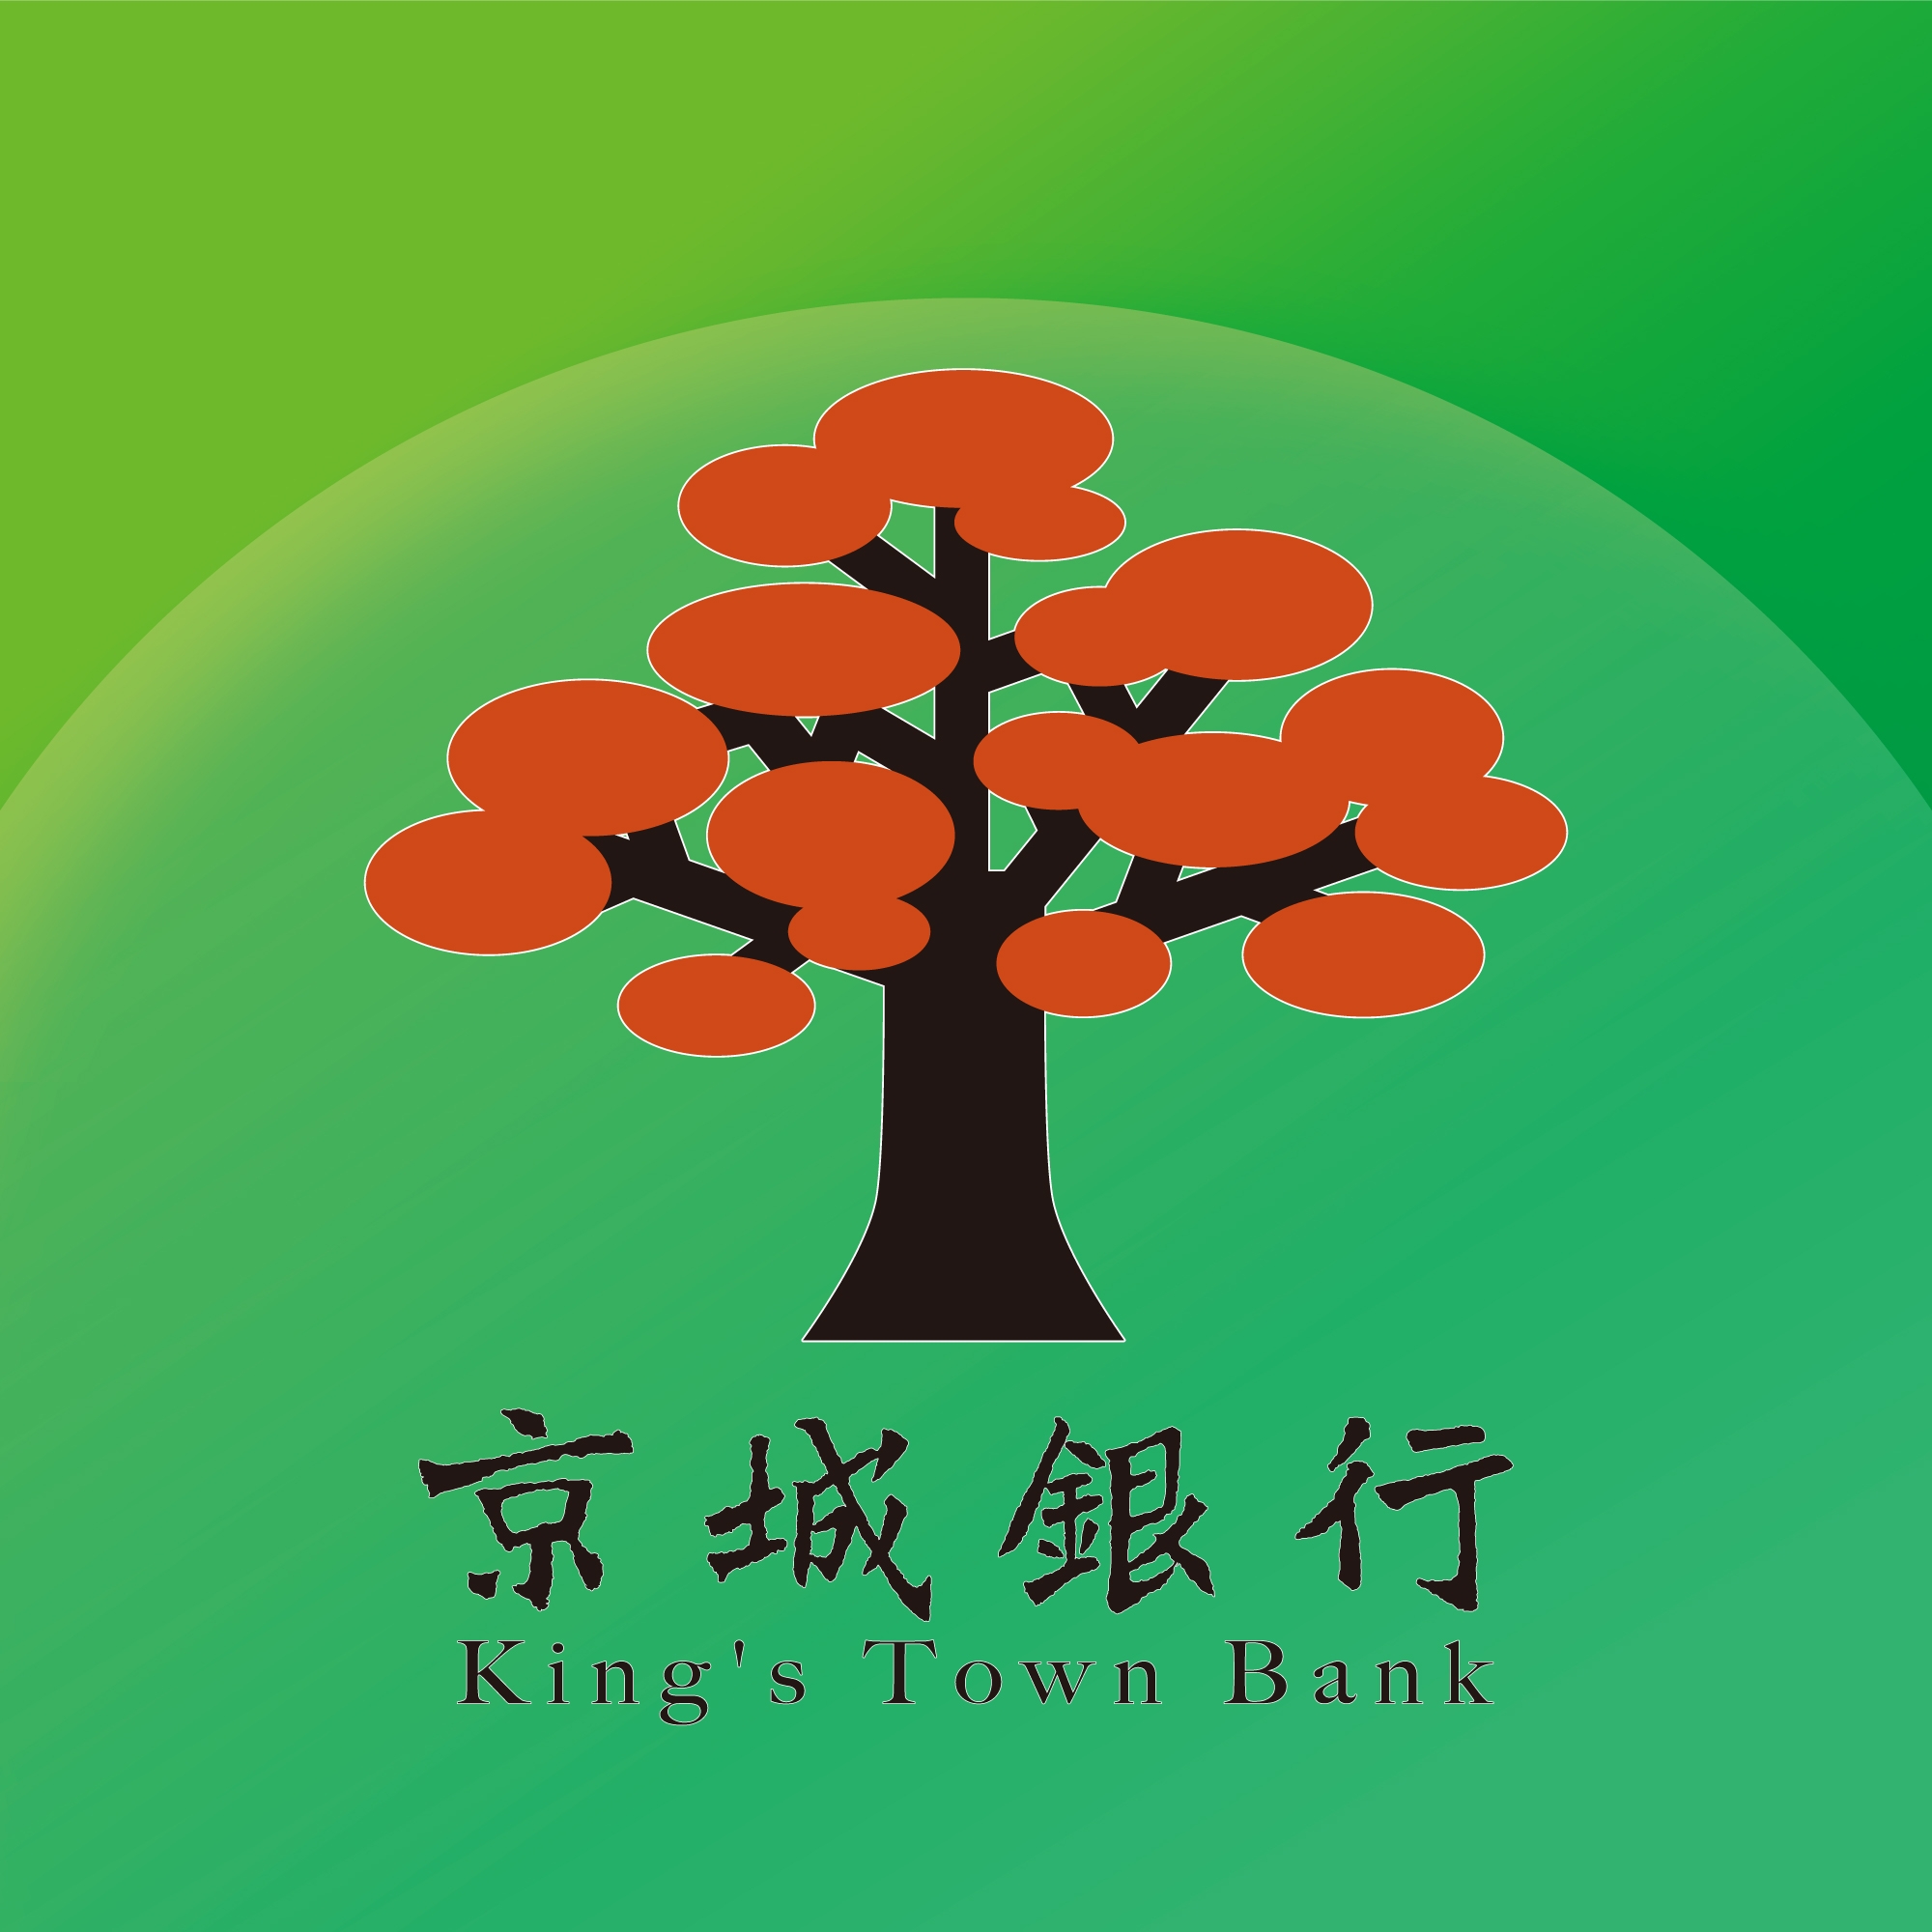 King's Town Bank Co., Ltd